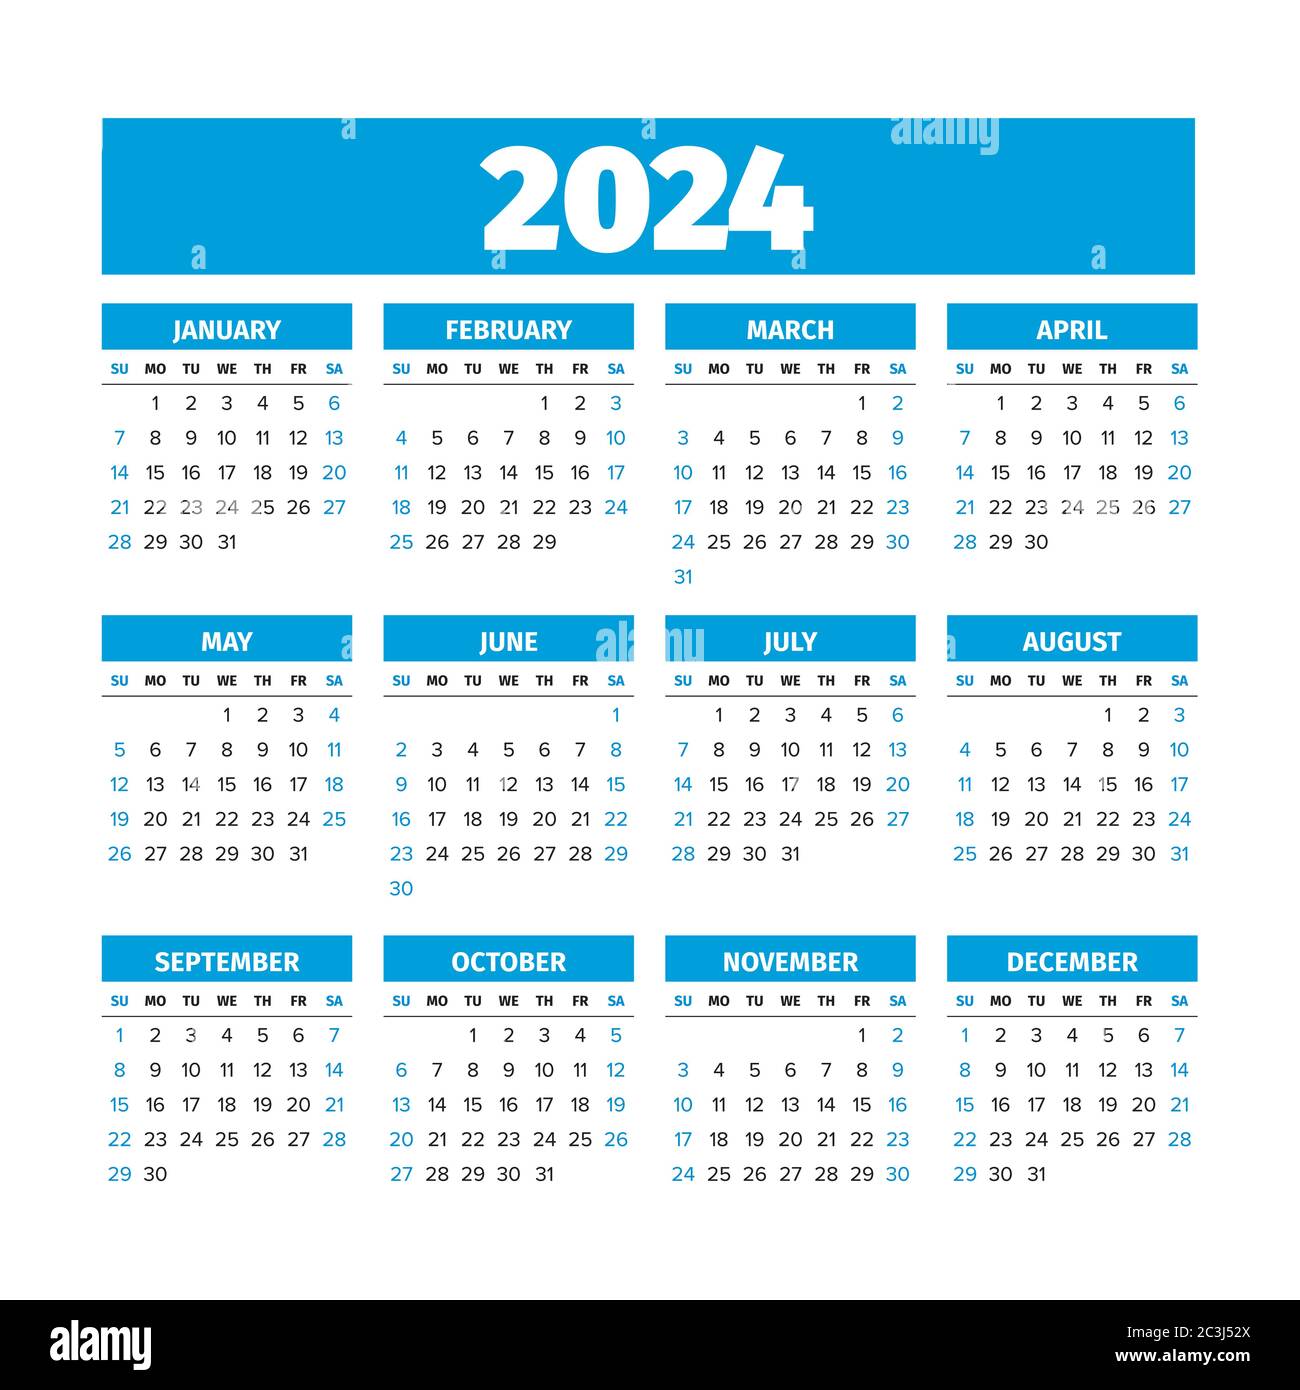 52 week numbered calendar 2024 14